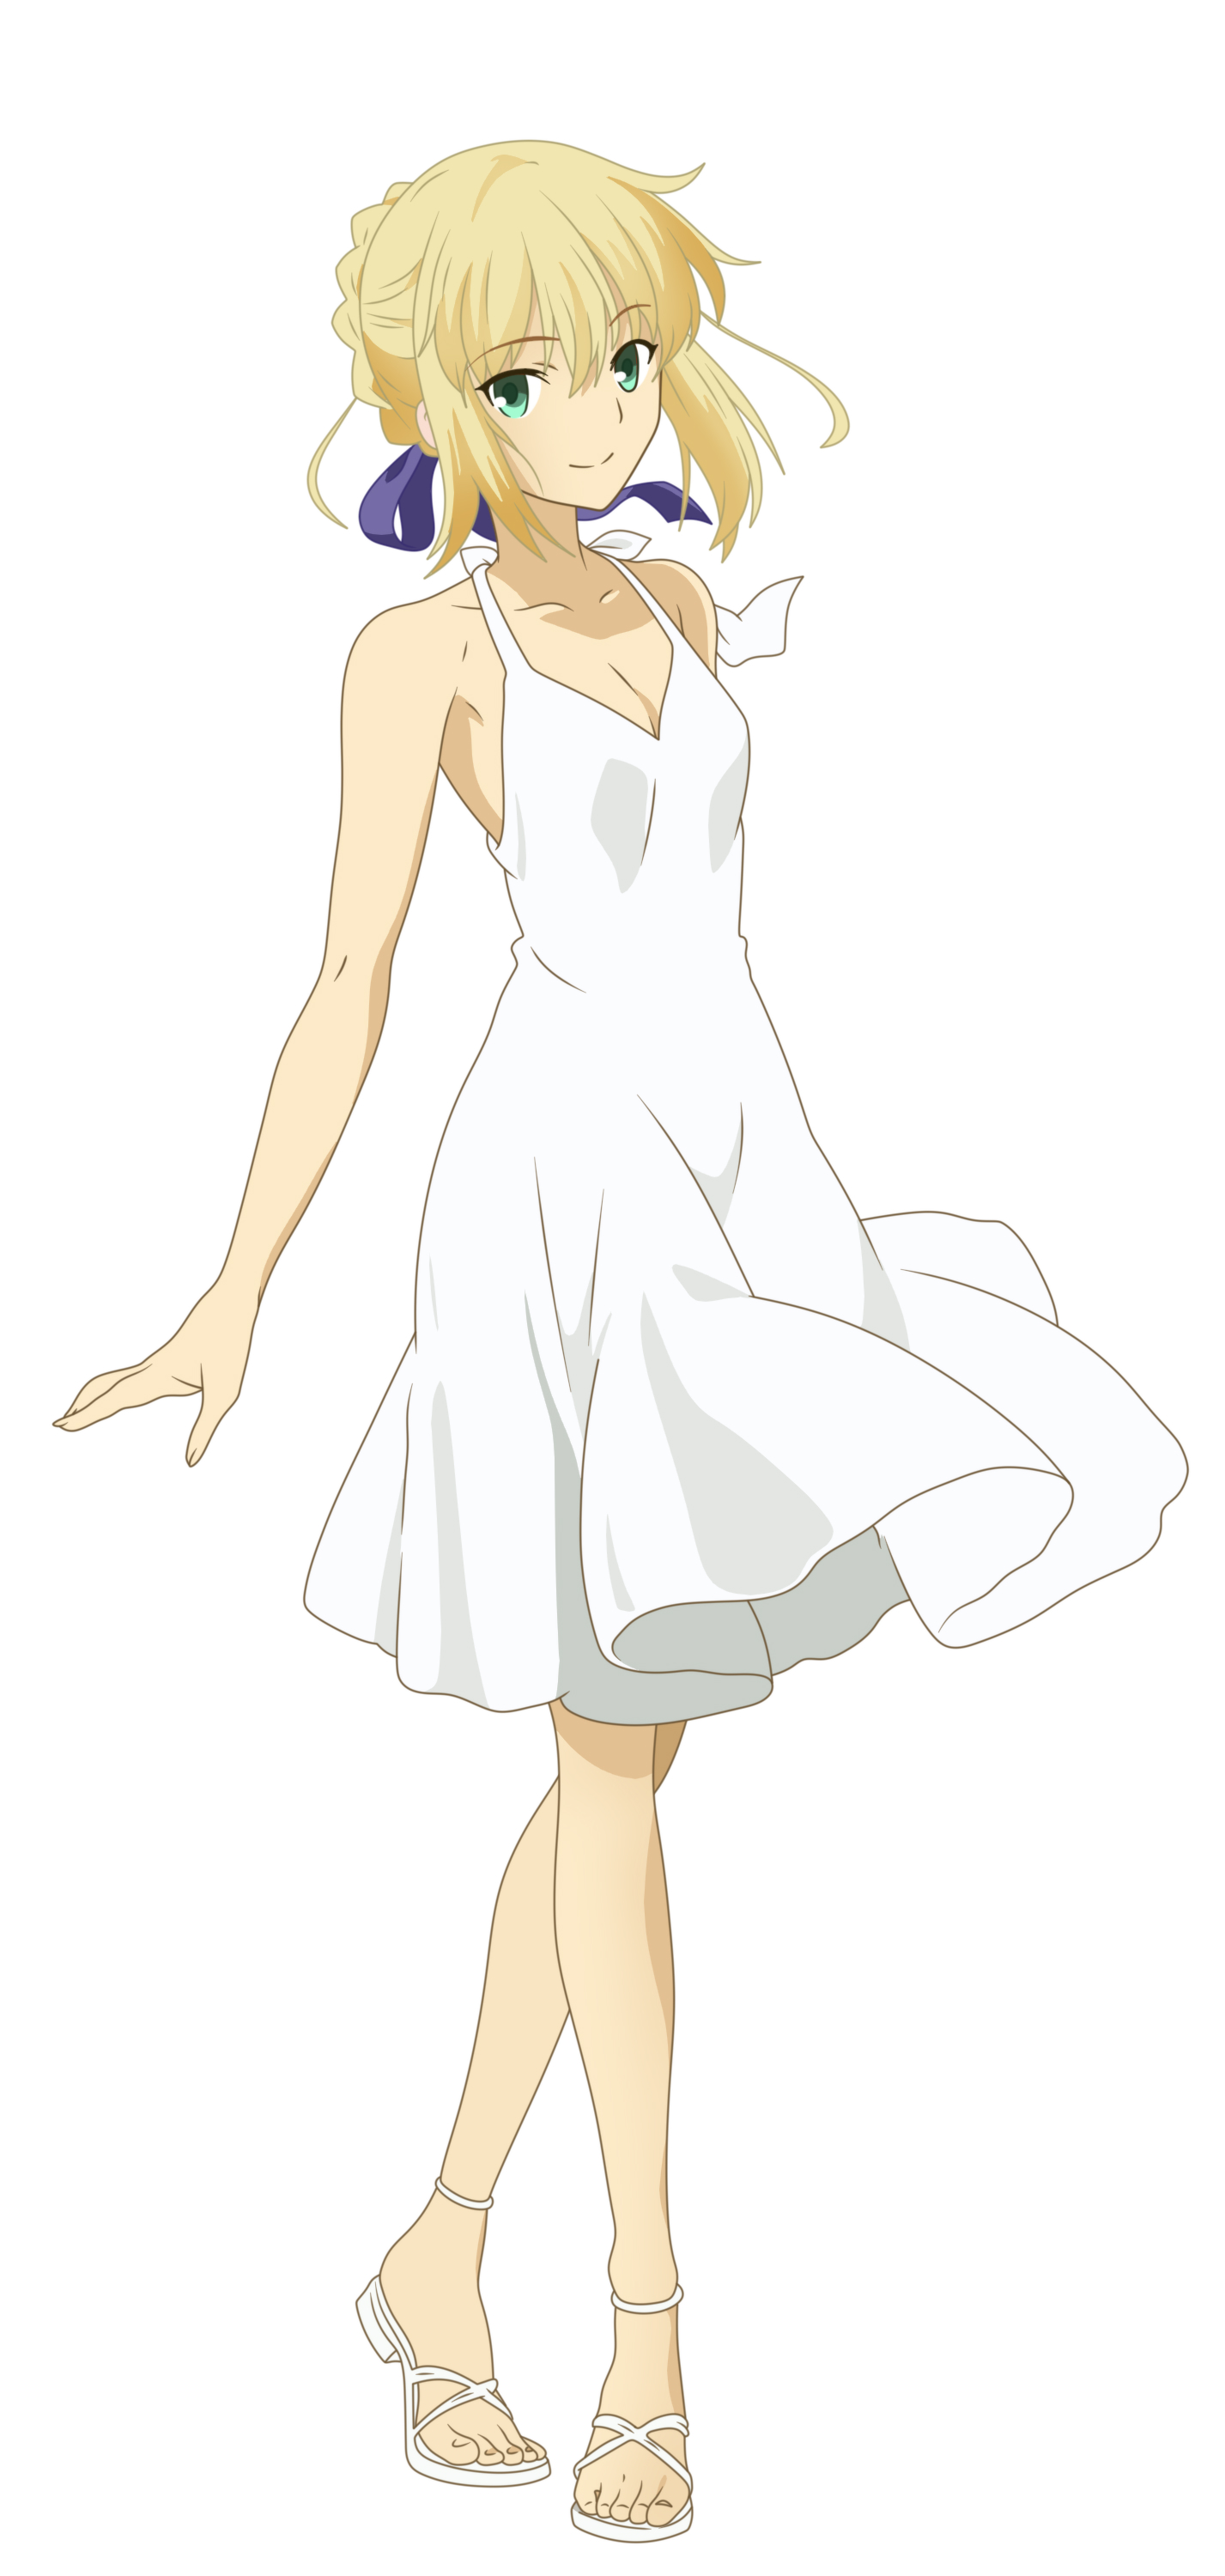 Anime blonde girl in white dress